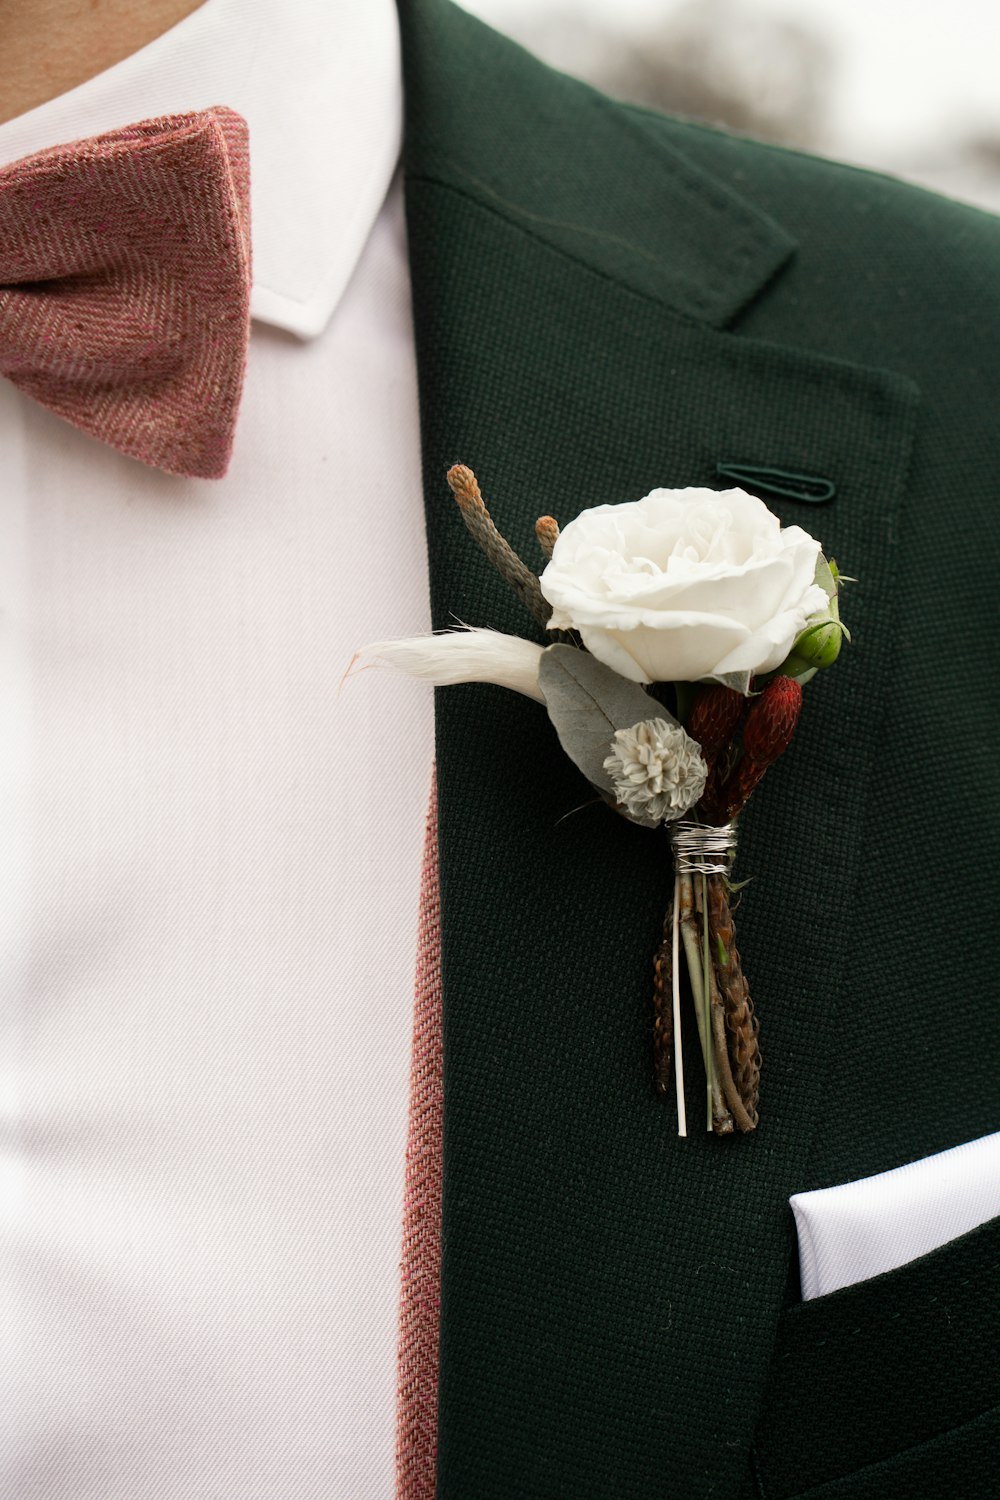 white rose on black suit jacket